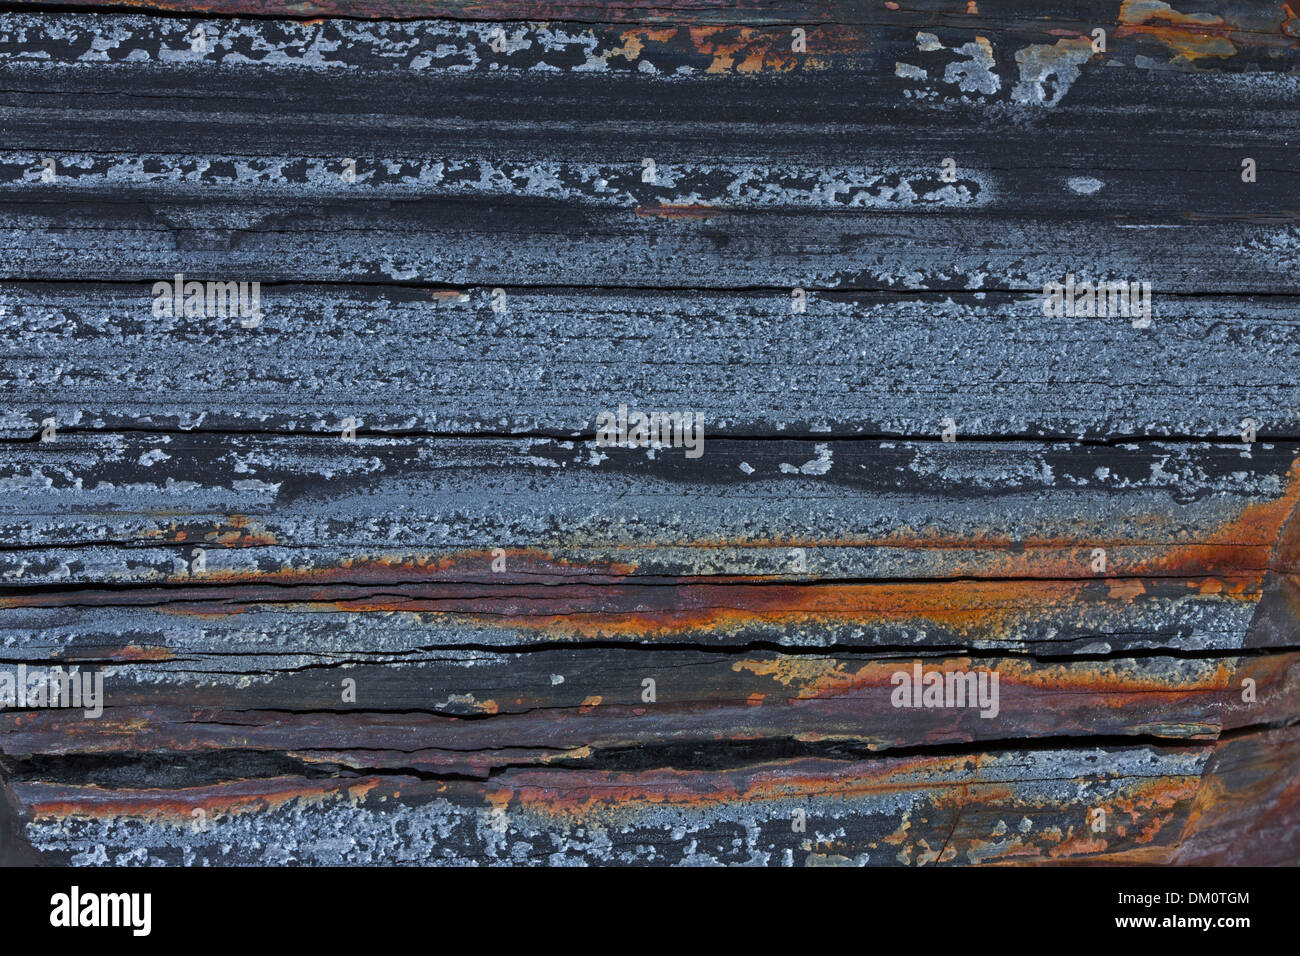 Marcellus shale de Marcellus, près de New York, source de gaz naturel , objet de controverse de fracturation Banque D'Images